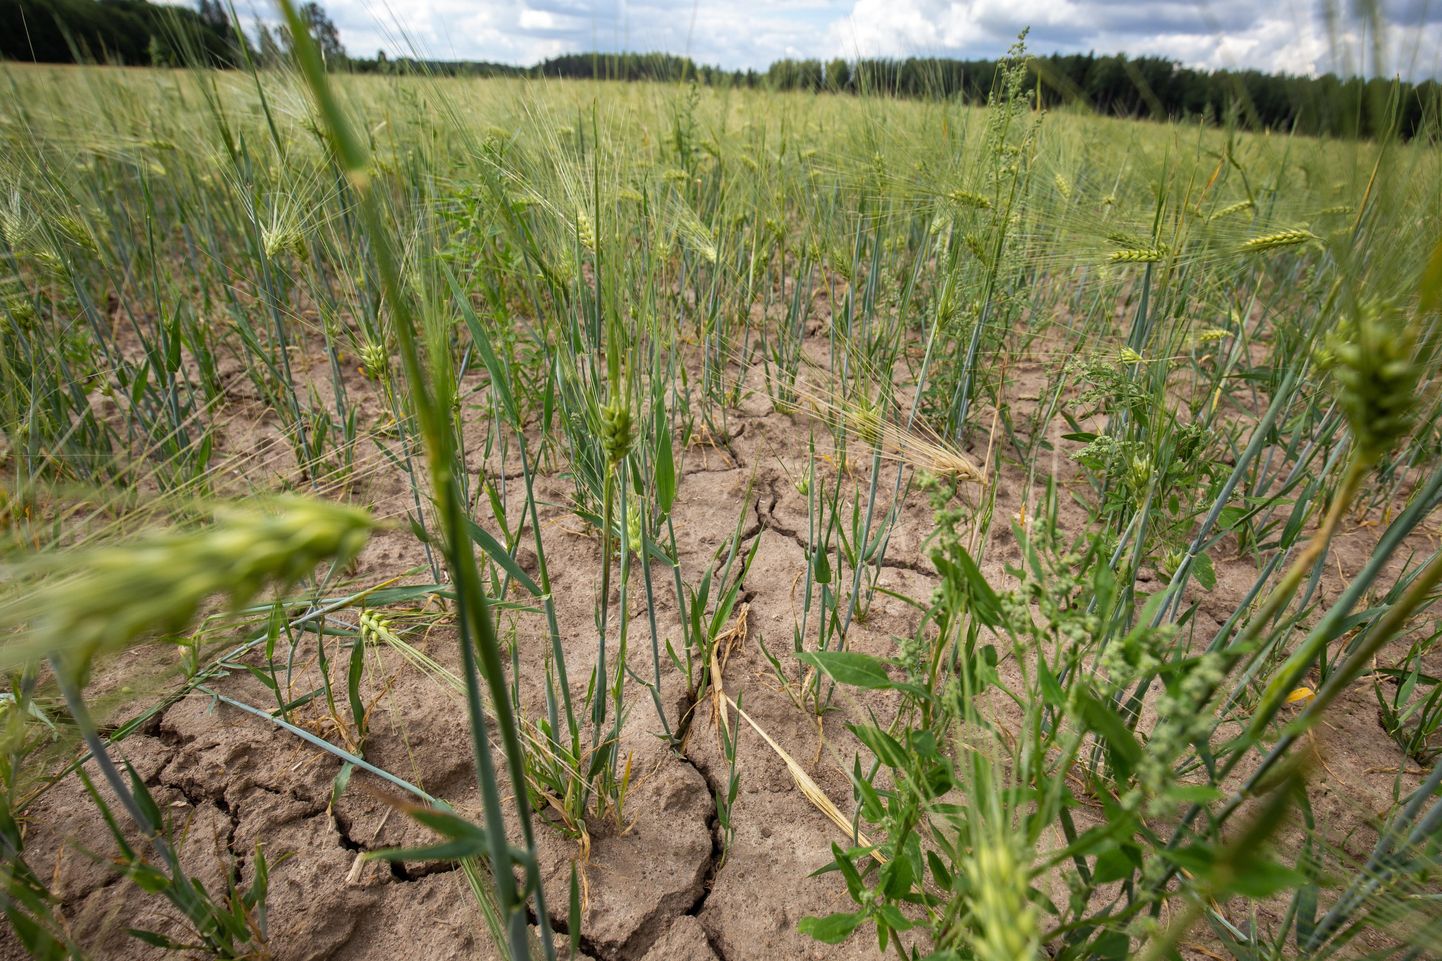 Sademetevaene ilm on mõjutanud taimede kasvu üle Eesti. Ilmateenistuse andmetel oli keskmine sademete hulk selle aasta mais ligikaudu 60 protsenti väiksem võrreldes pikaajalise keskmisega.